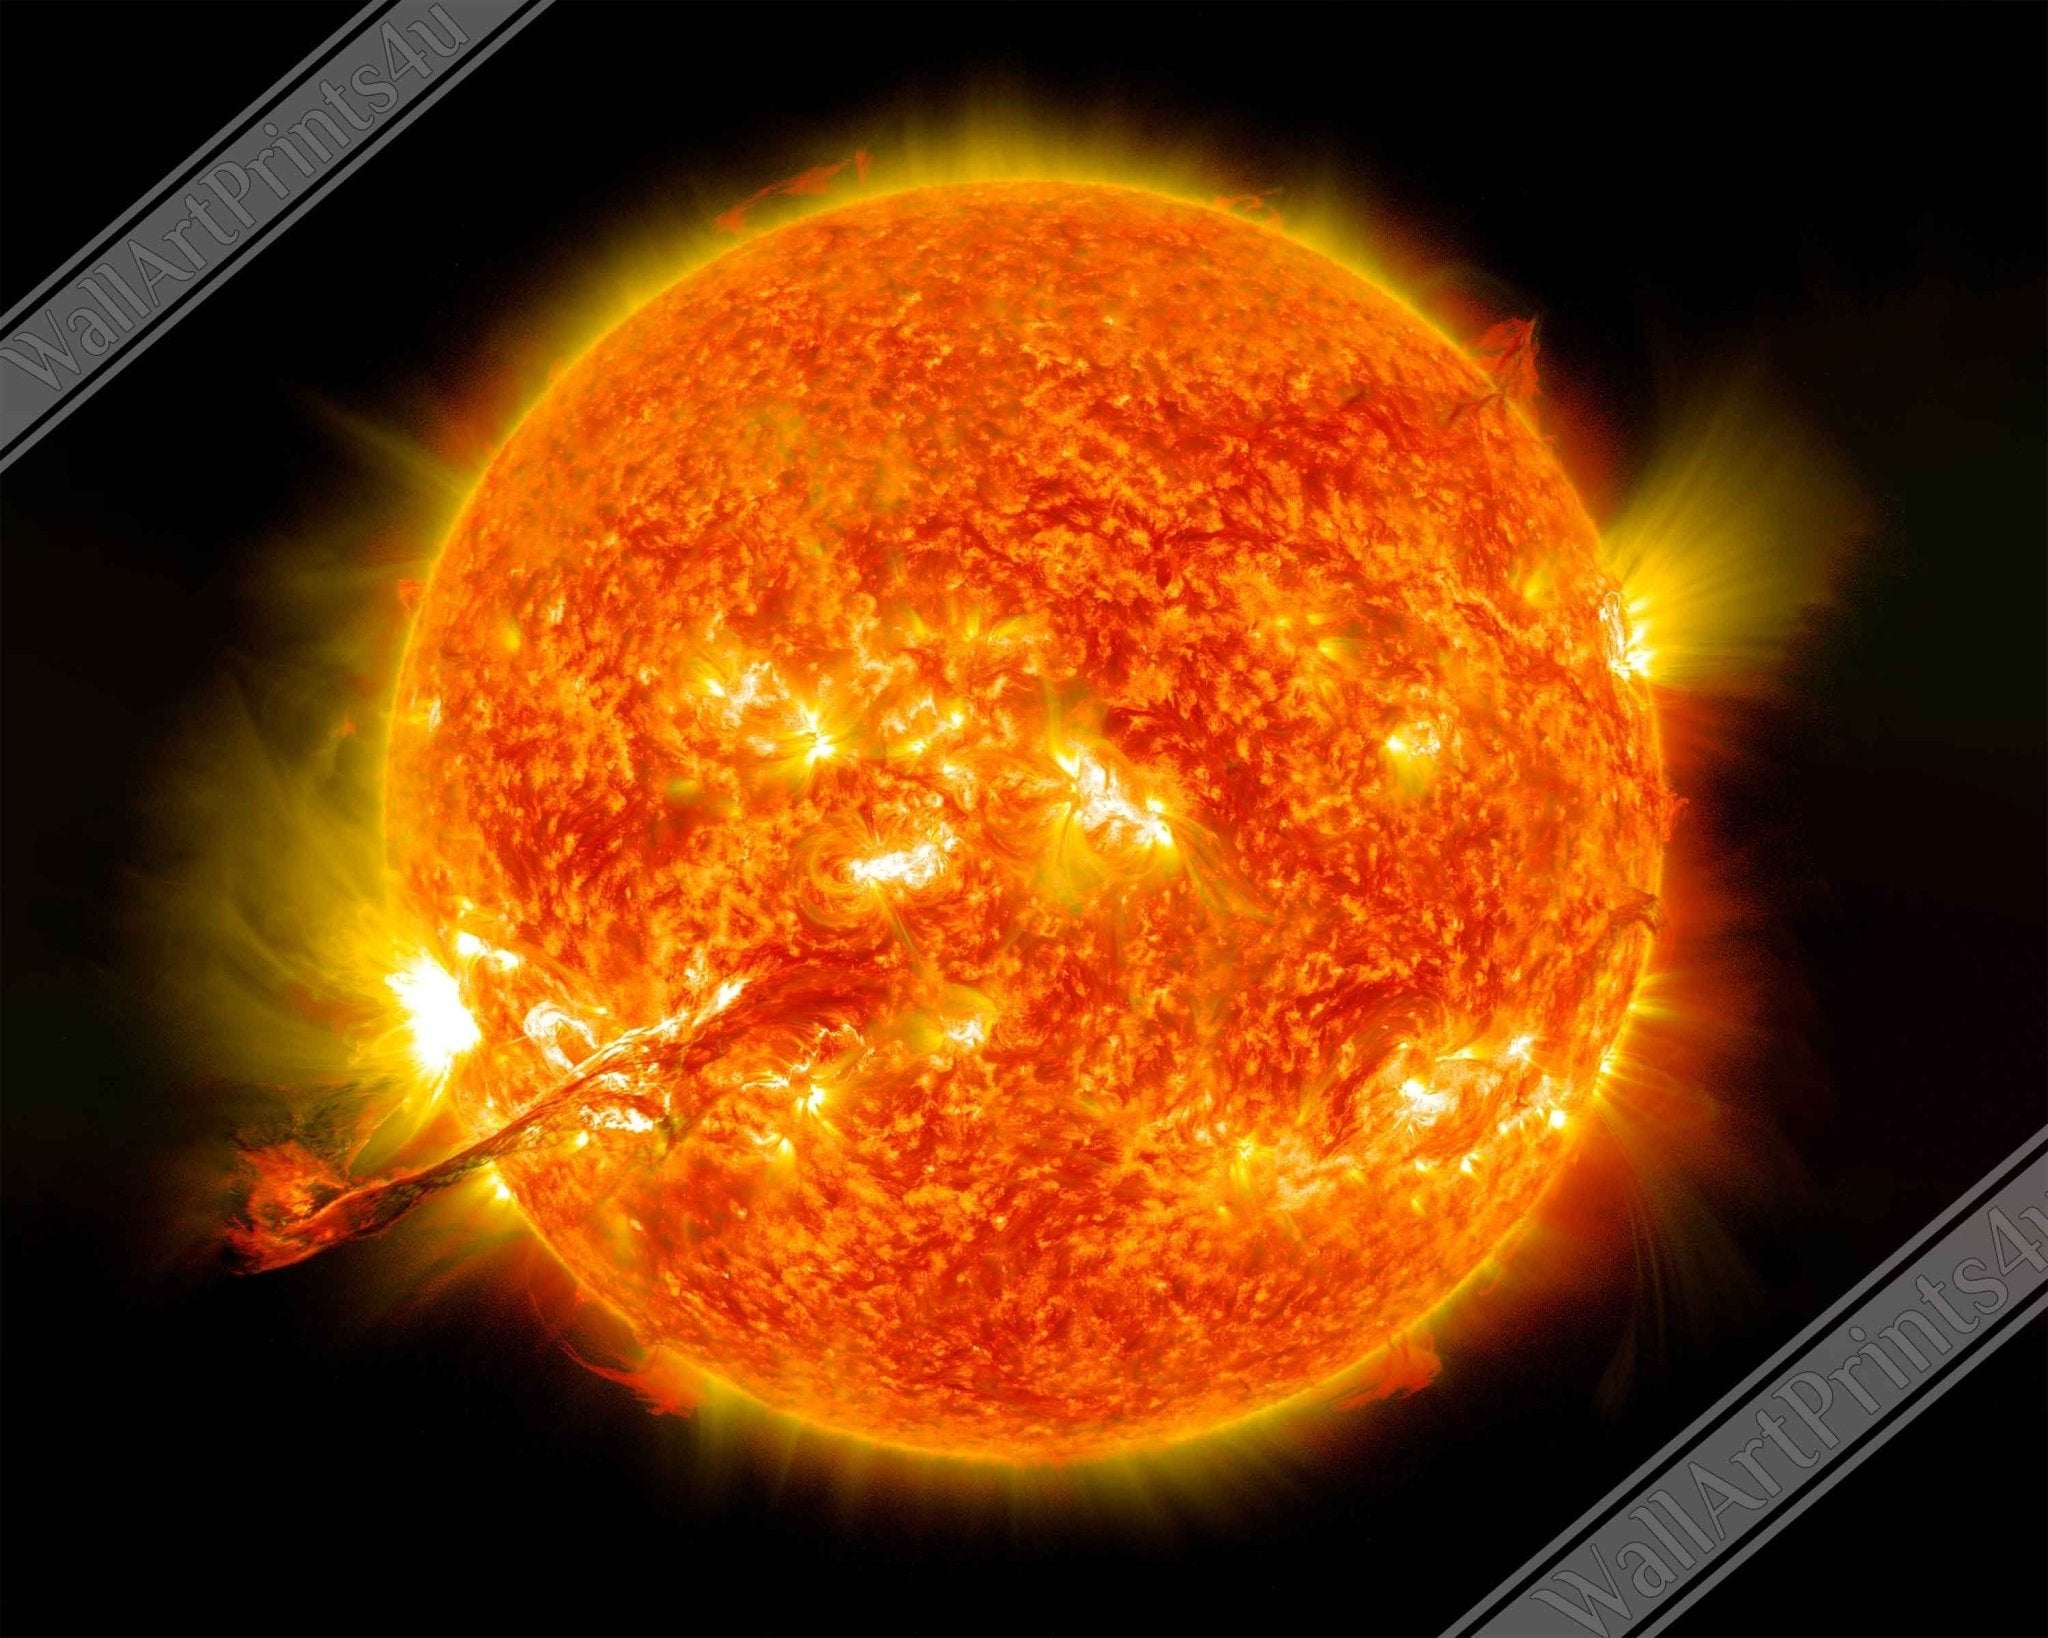 Sun Canvas Print - Nasa Sun Eruption 2012 - Canvas Of The Sun With Coronal Mass Ejection - WallArtPrints4U